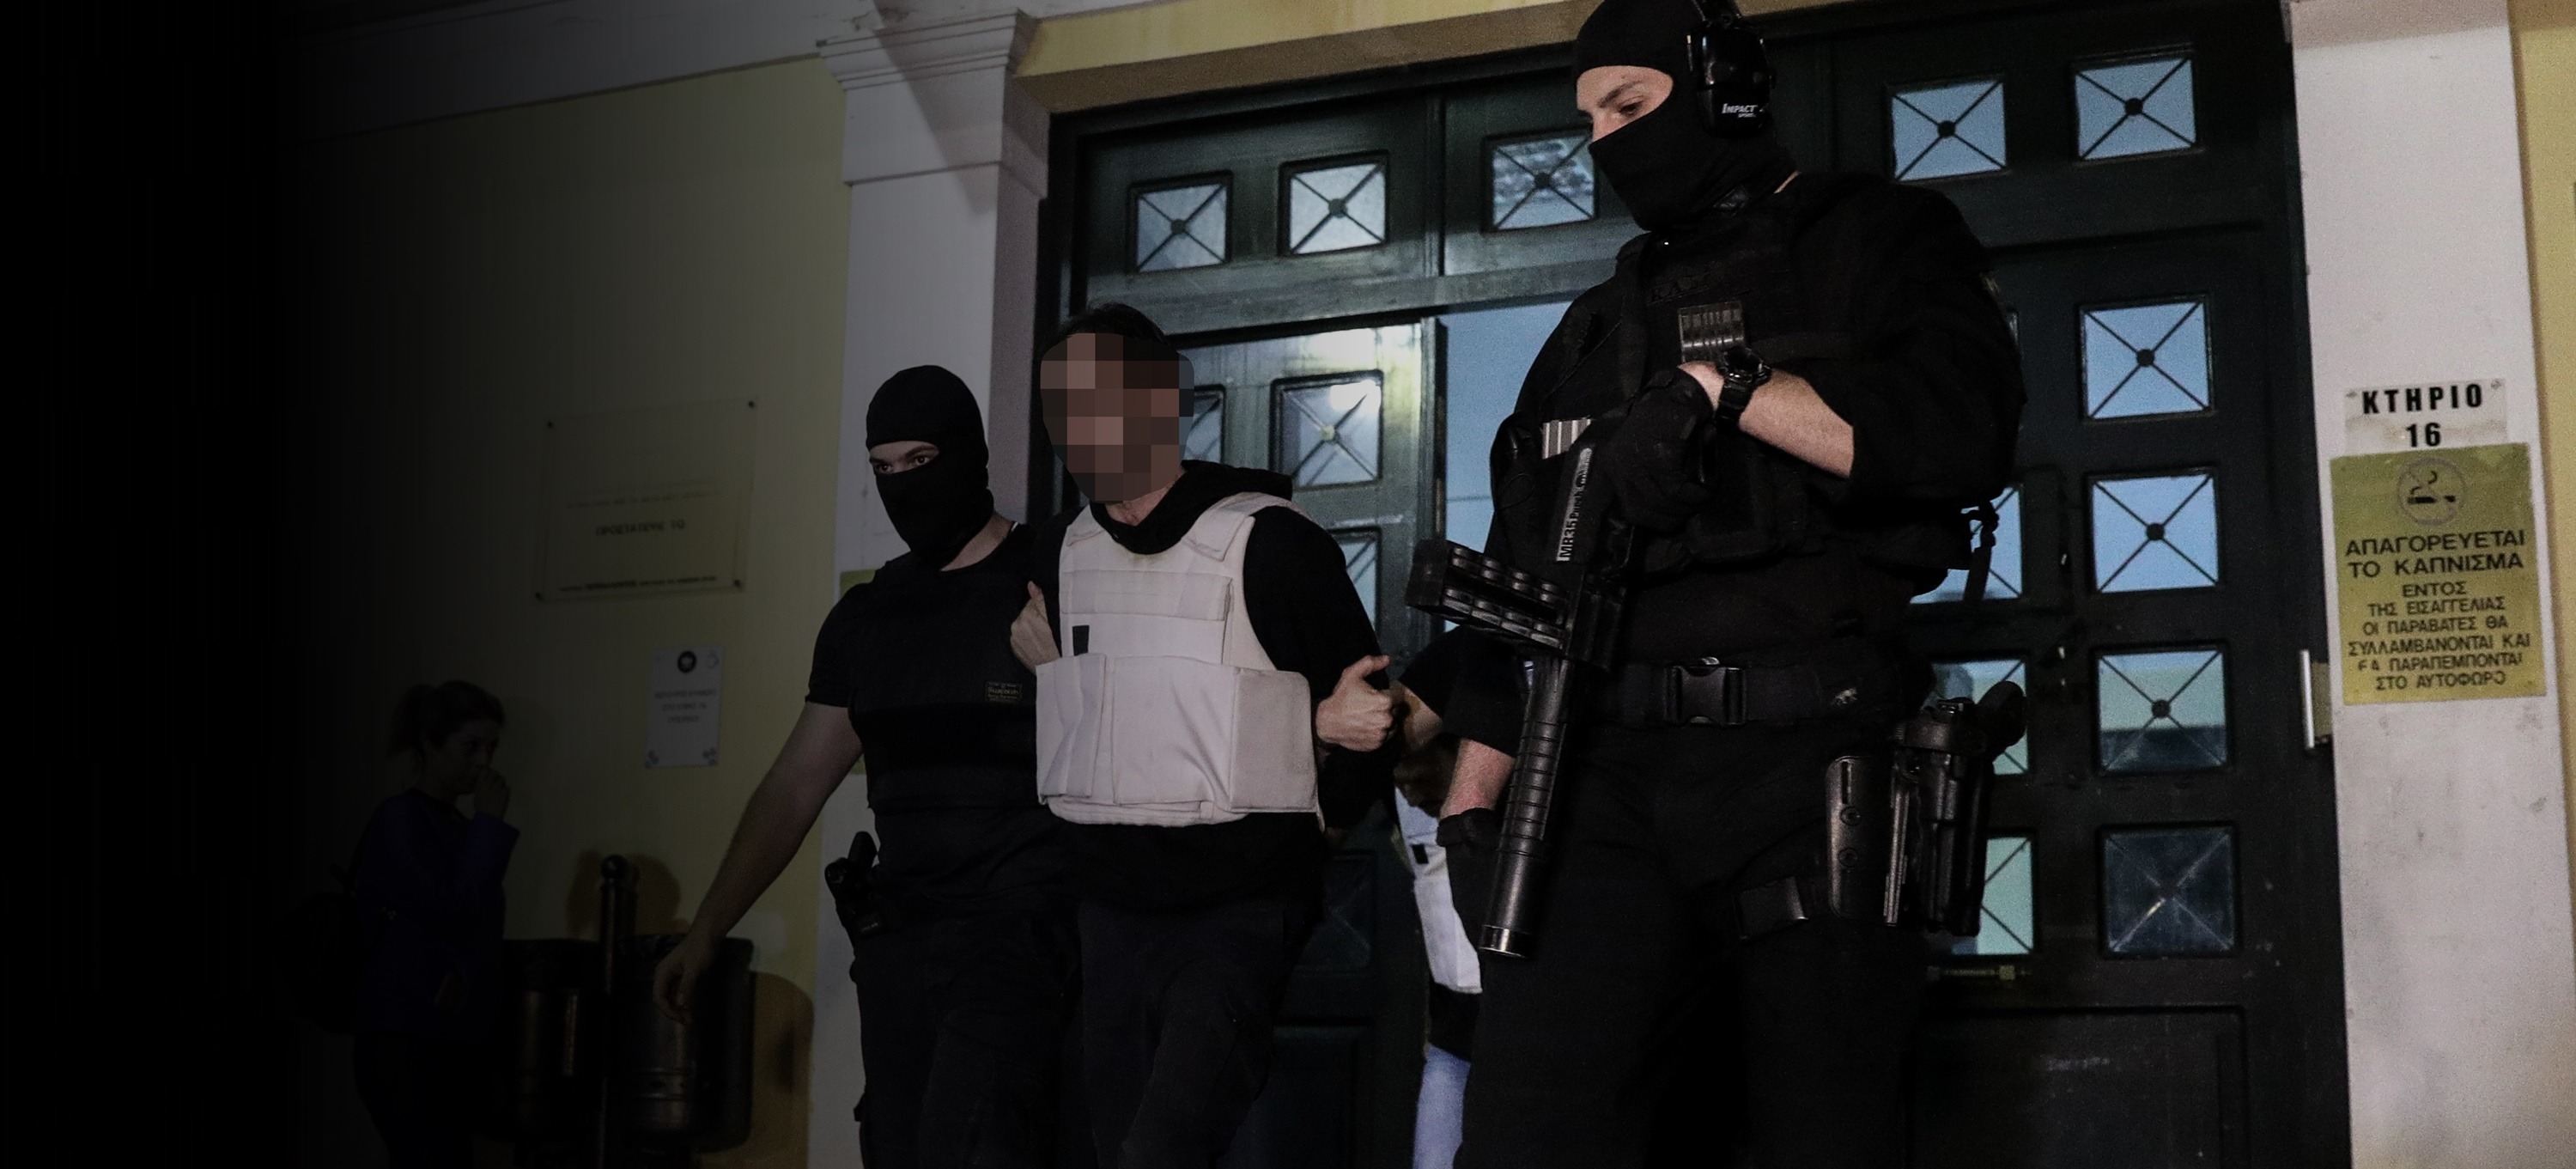 Επαναστατική Αυτοάμυνα: Στον εισαγγελέα με βρισιές οι τρομοκράτες (vid)